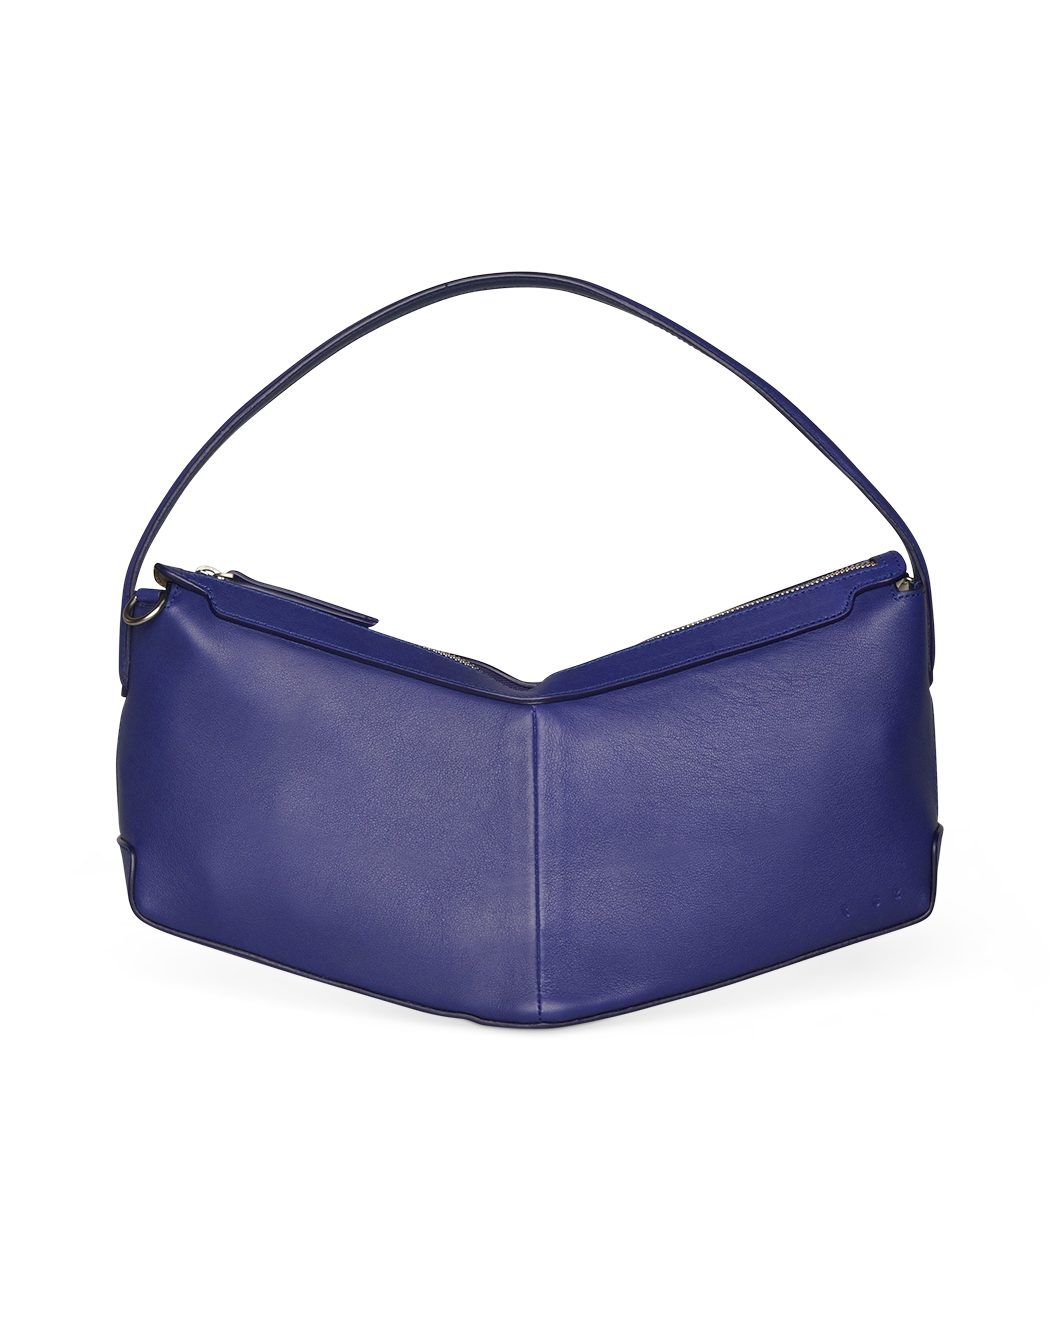 the V baguette Klein blue shoulder bag